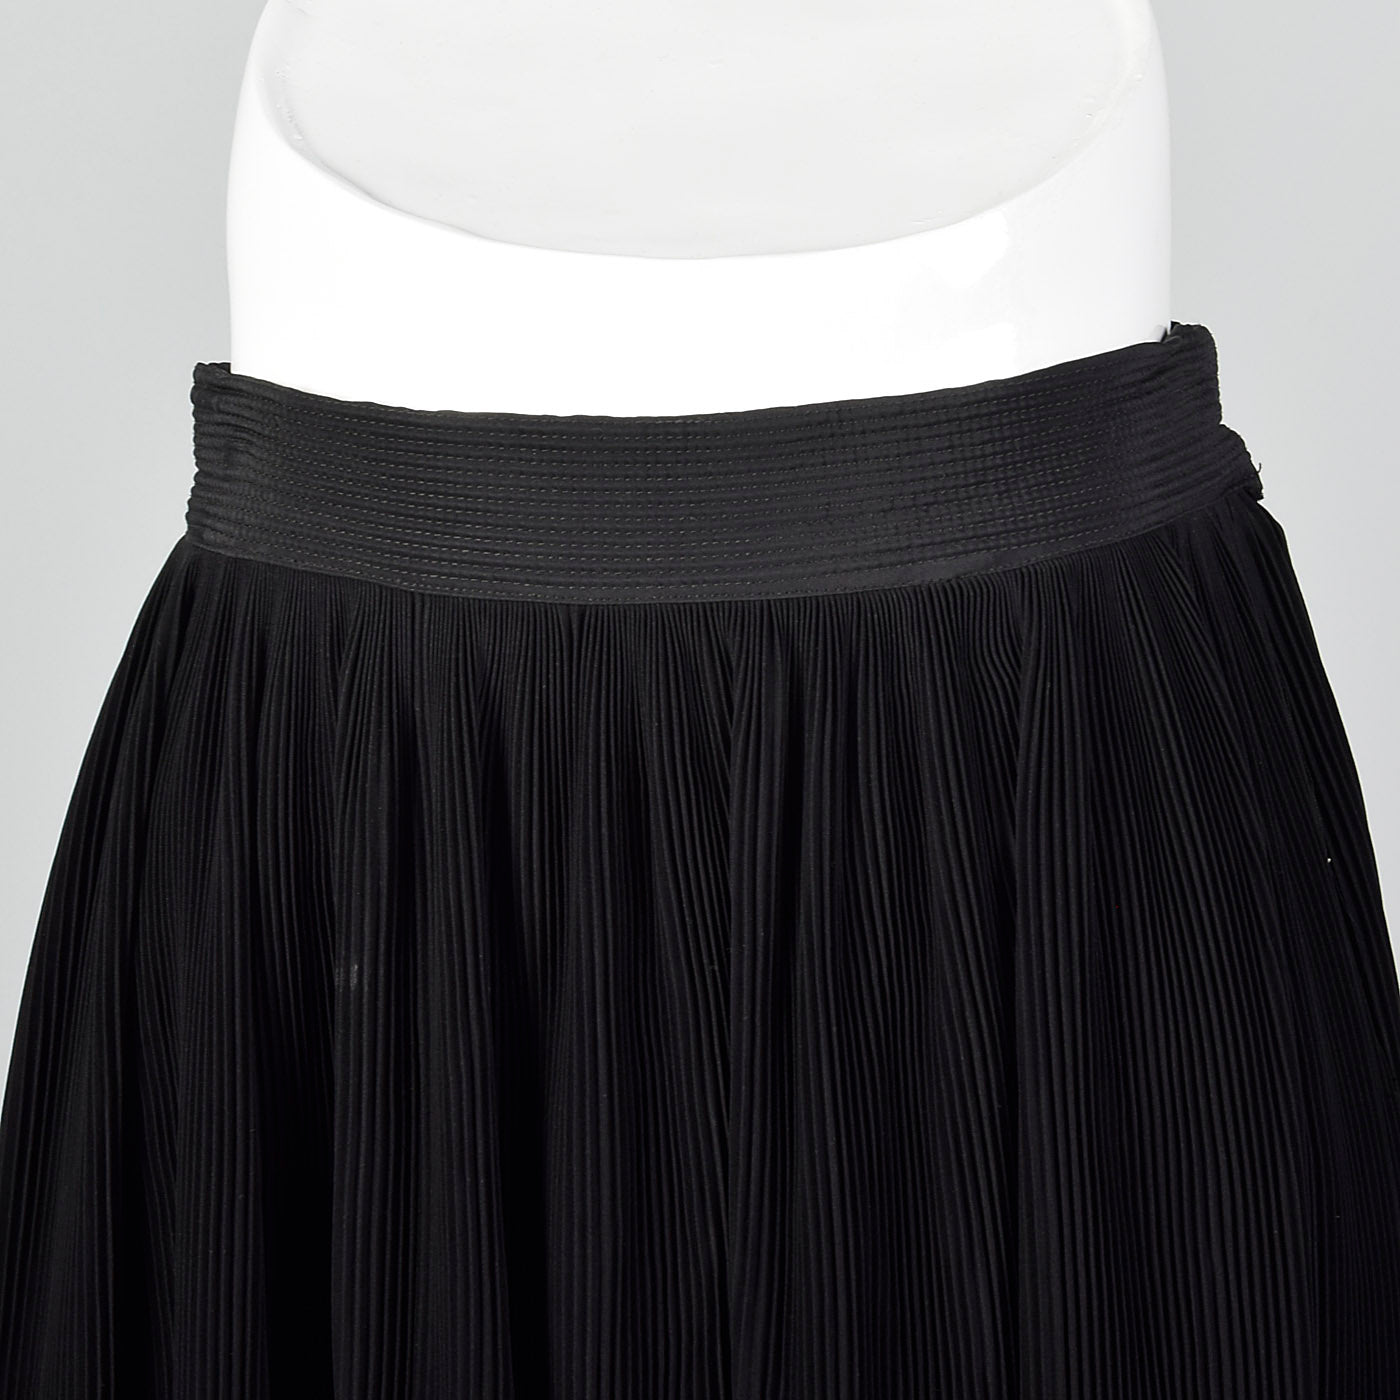 1950s Black Crystal Pleat Skirt